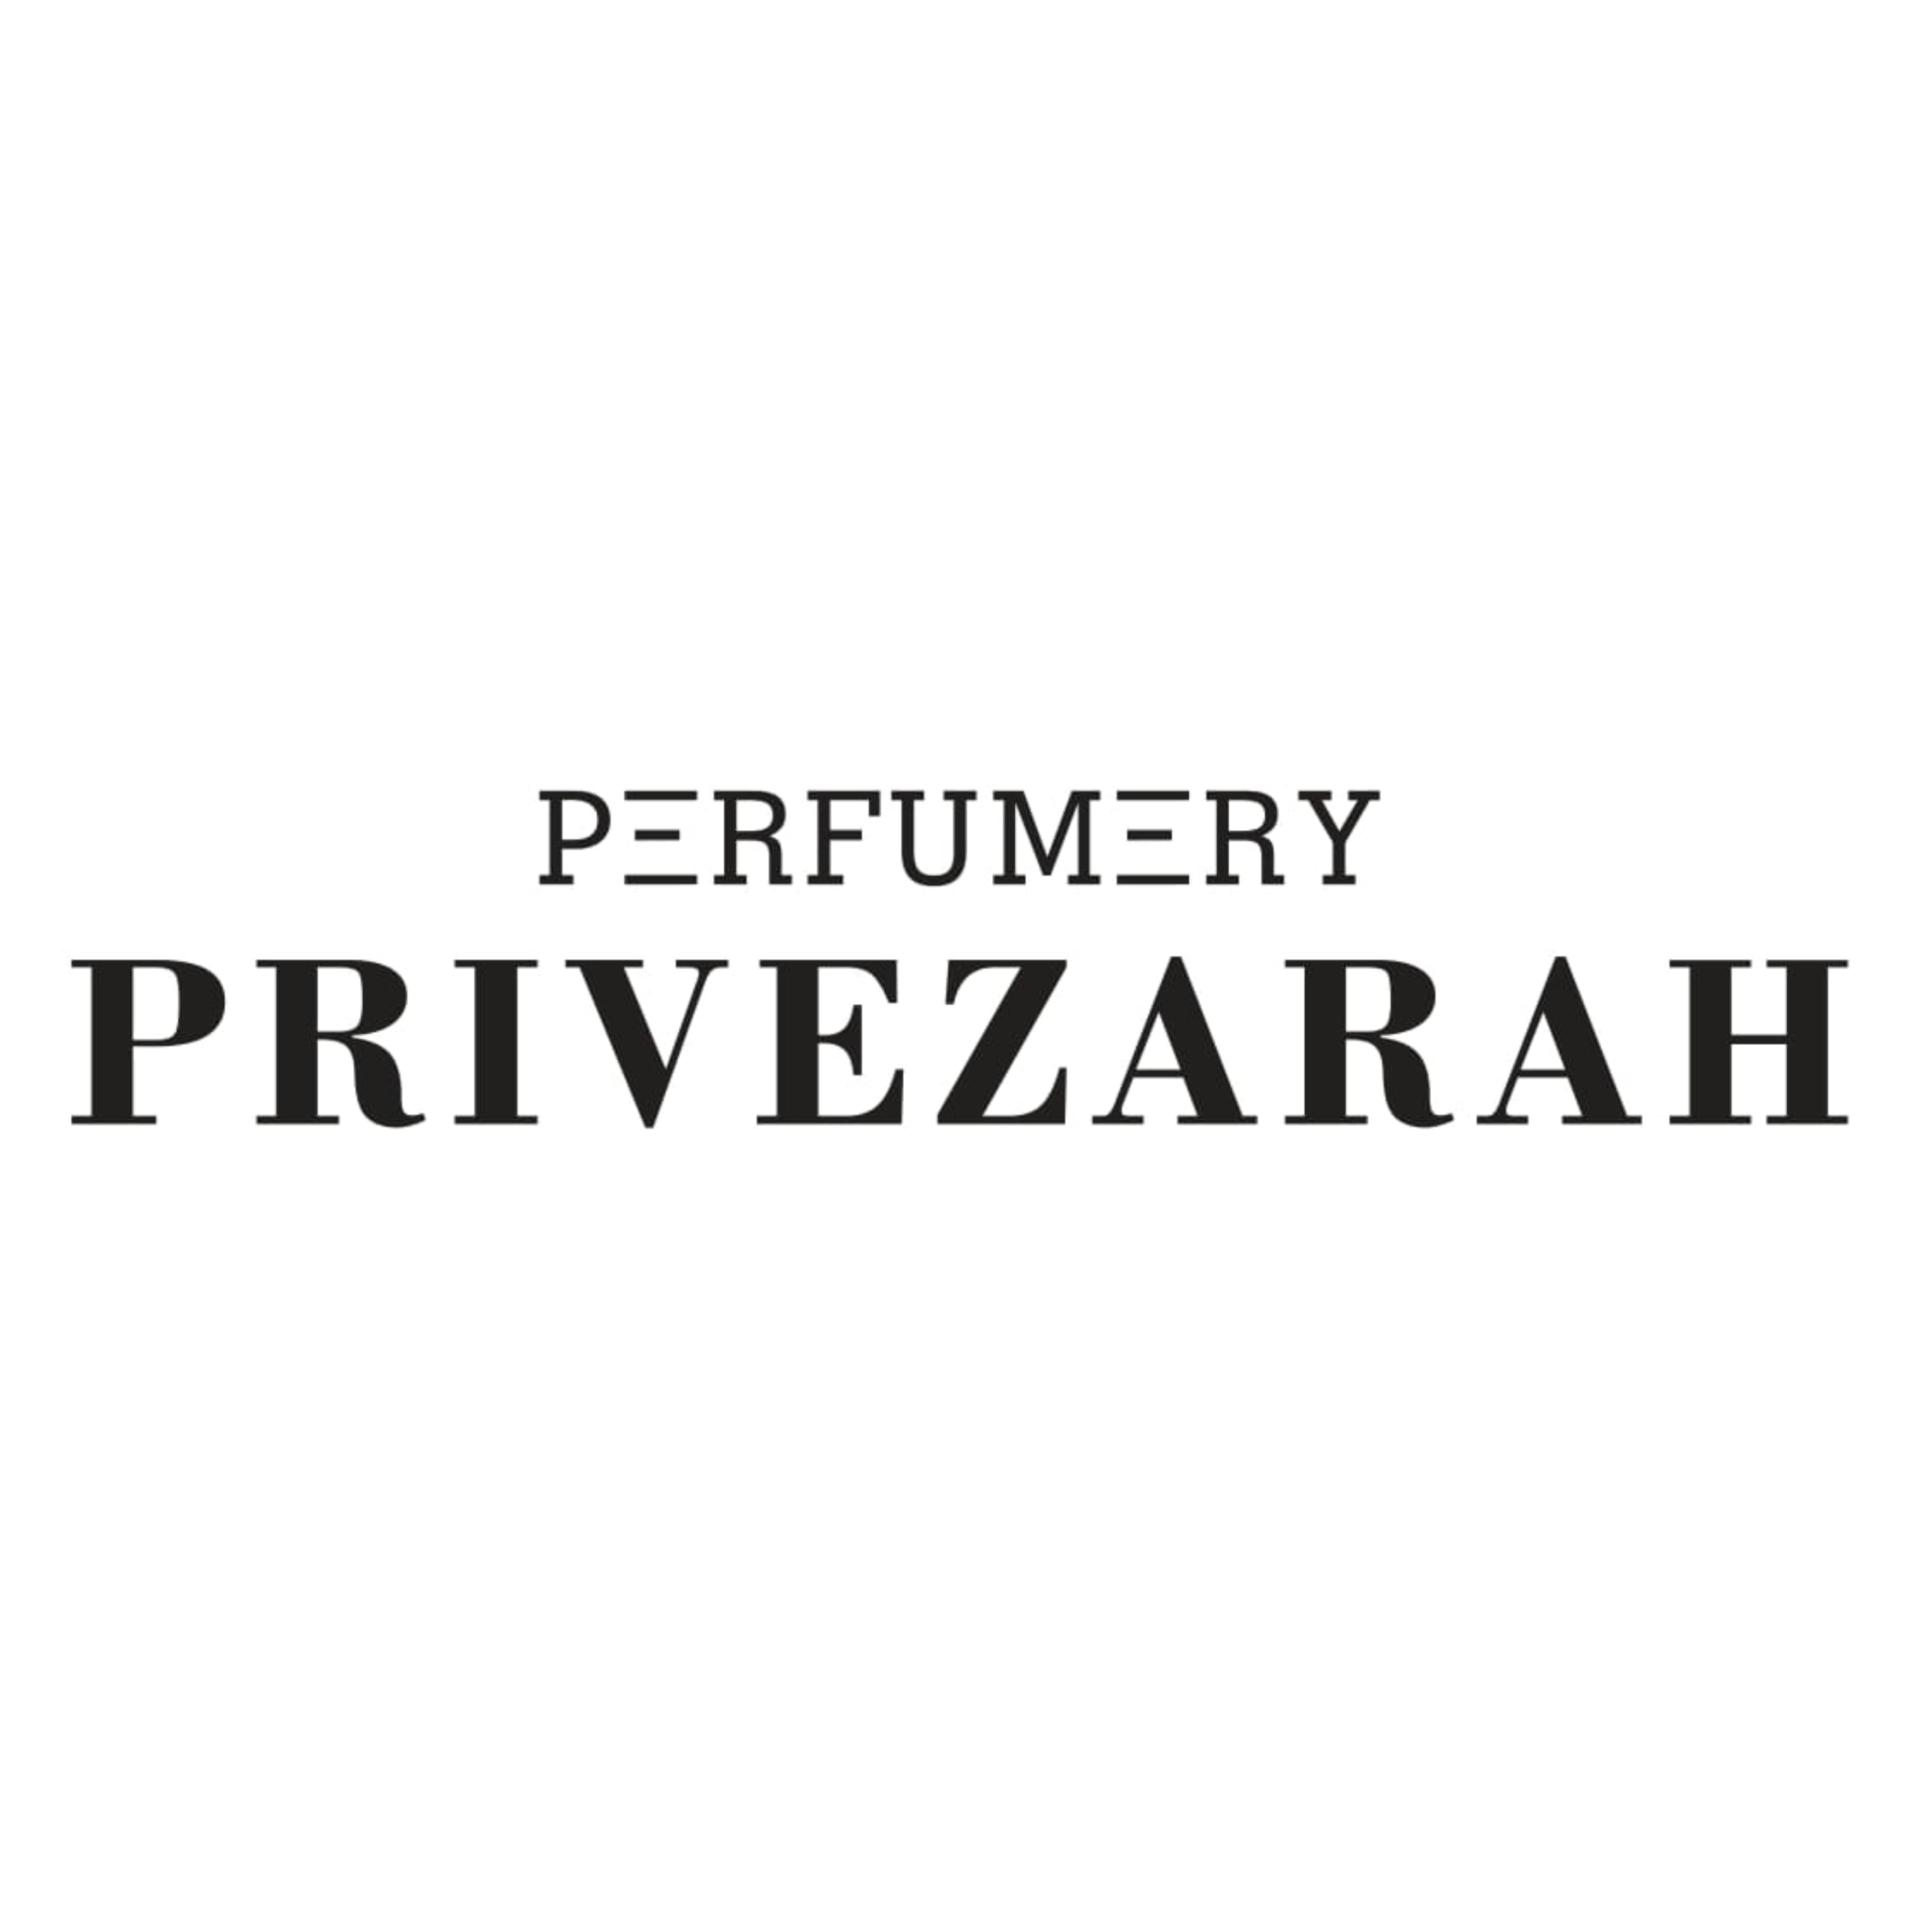 Perfumery Privezarah